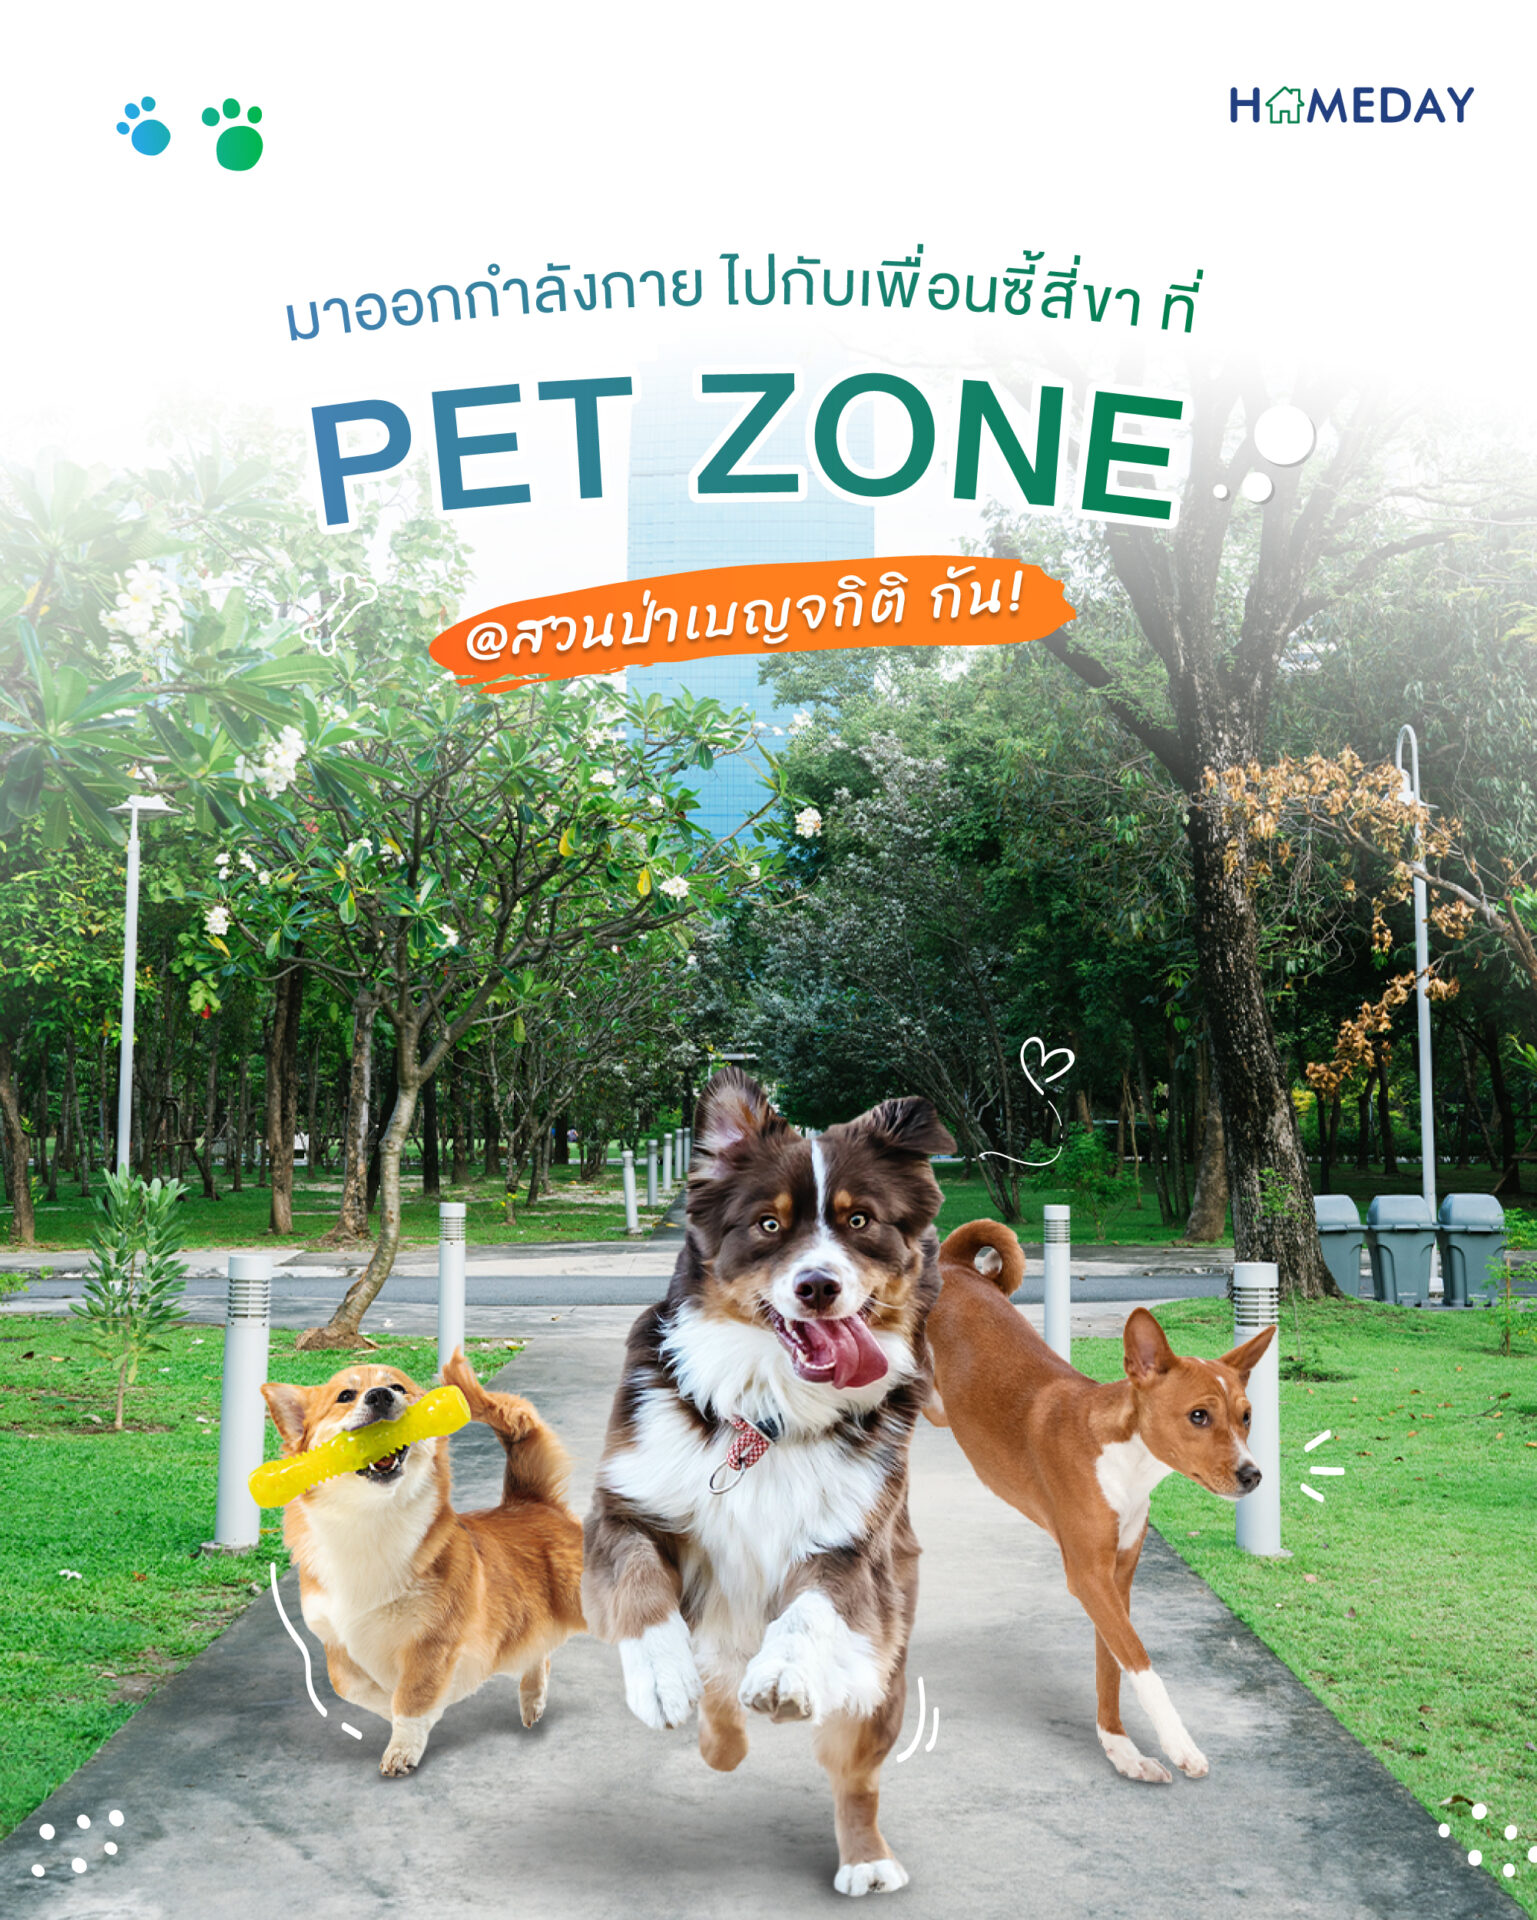 220916 สวนเบญกิติ Pet Zone 01